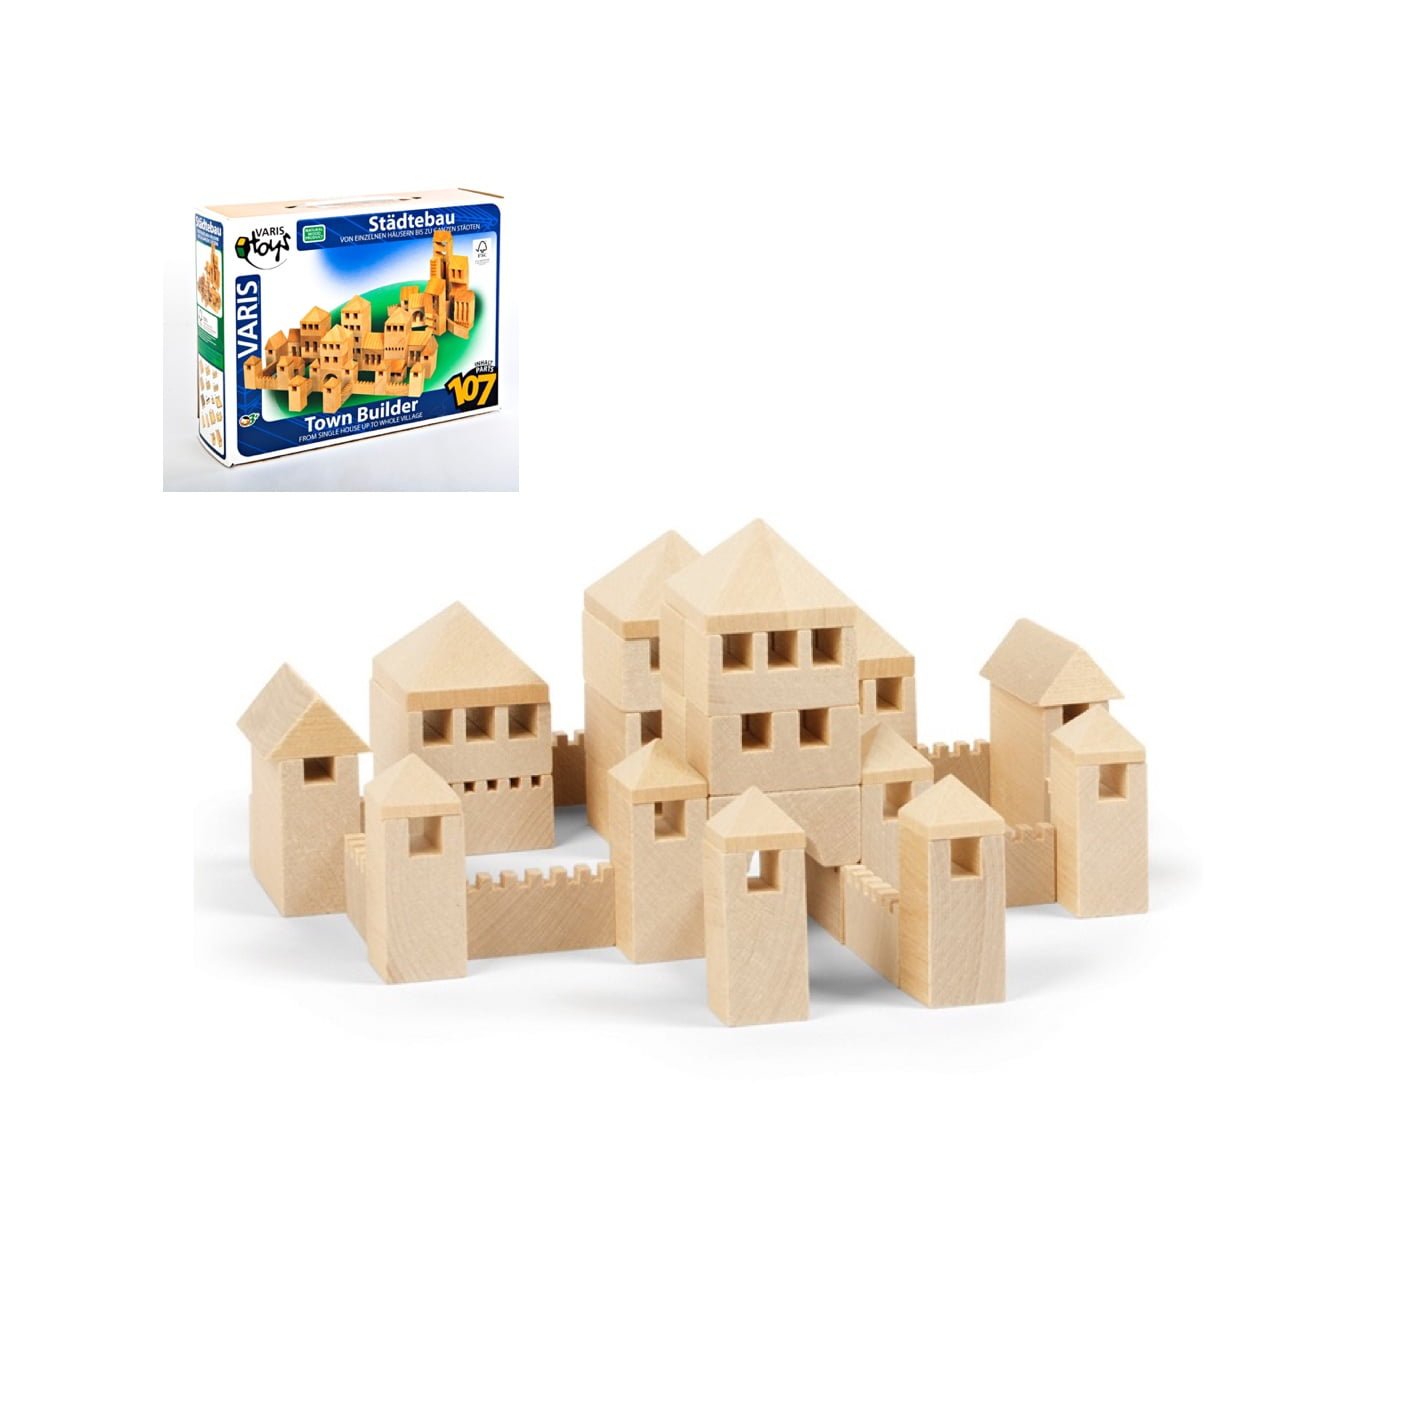 Varis деревянные кубики - Крепость 107